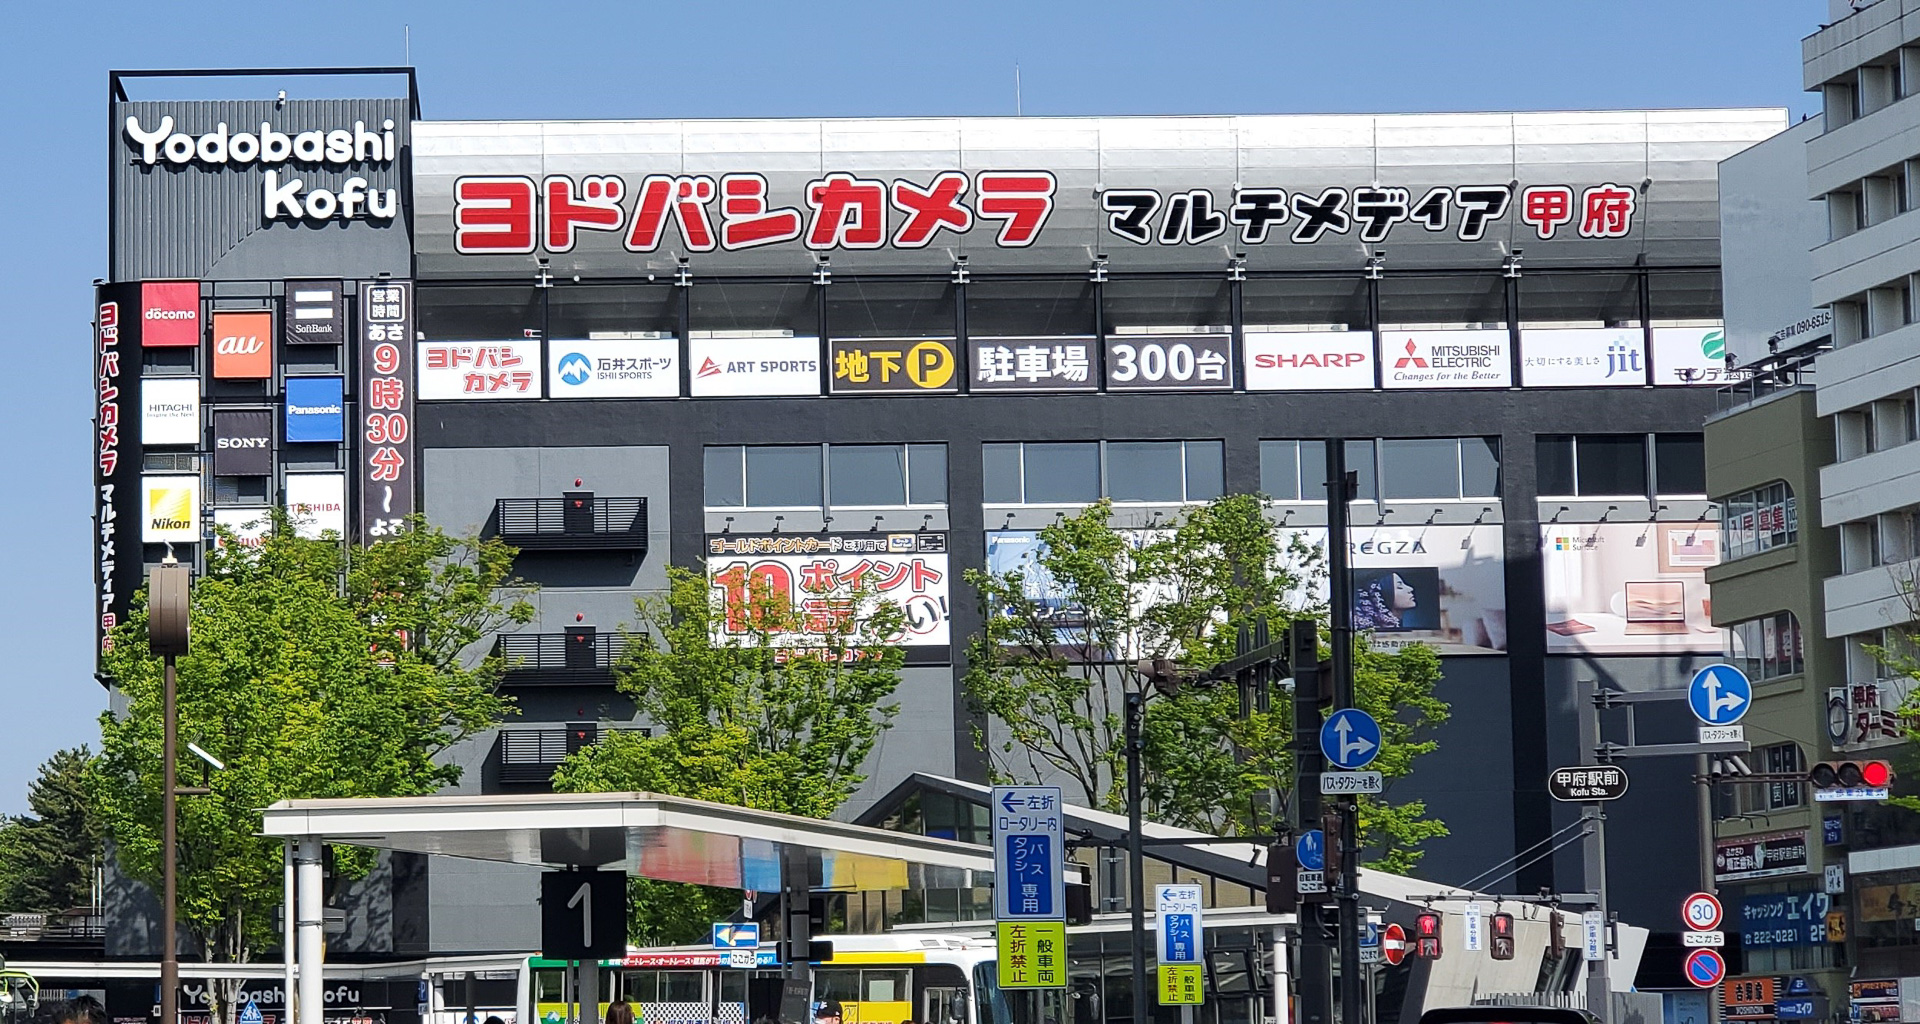 ヨドバシ甲府、地下1階に大型スーパーマーケット「ロピア」が12月26日